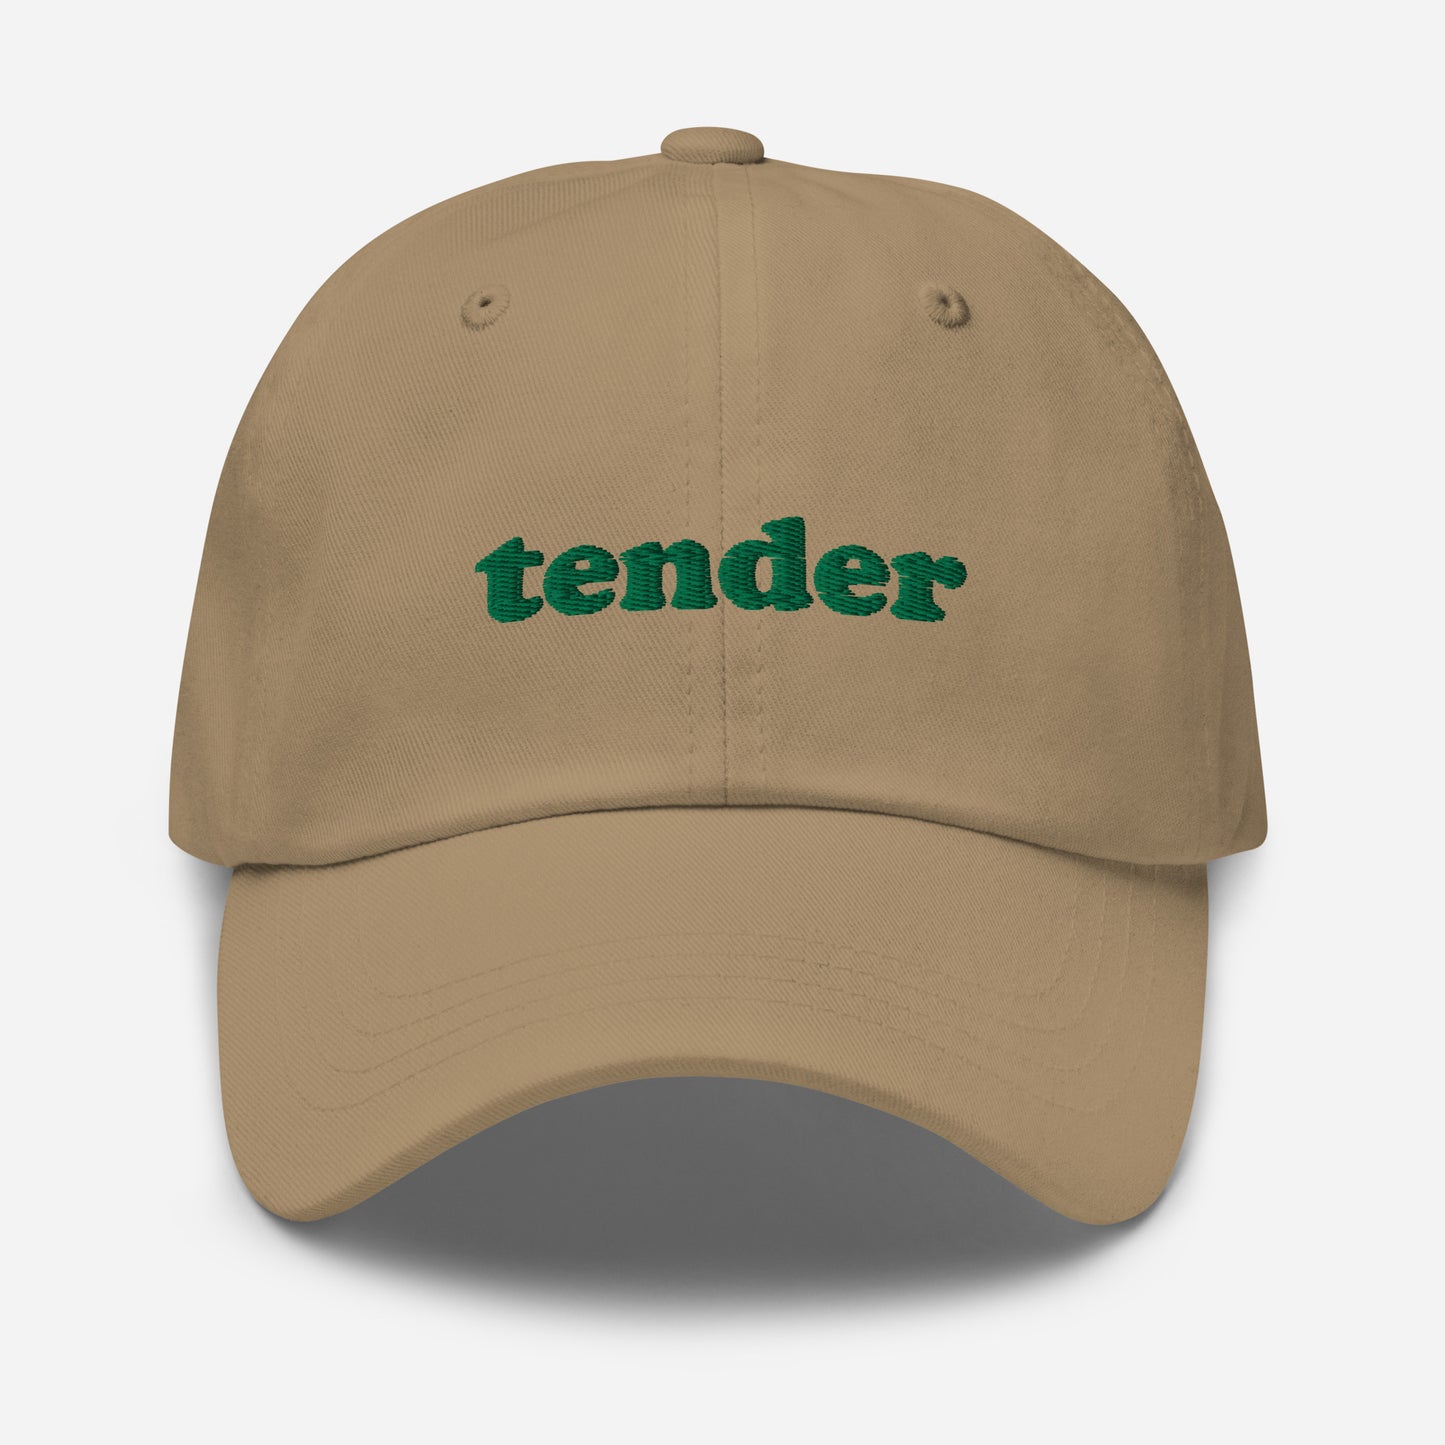 Feelings Hat - Tender